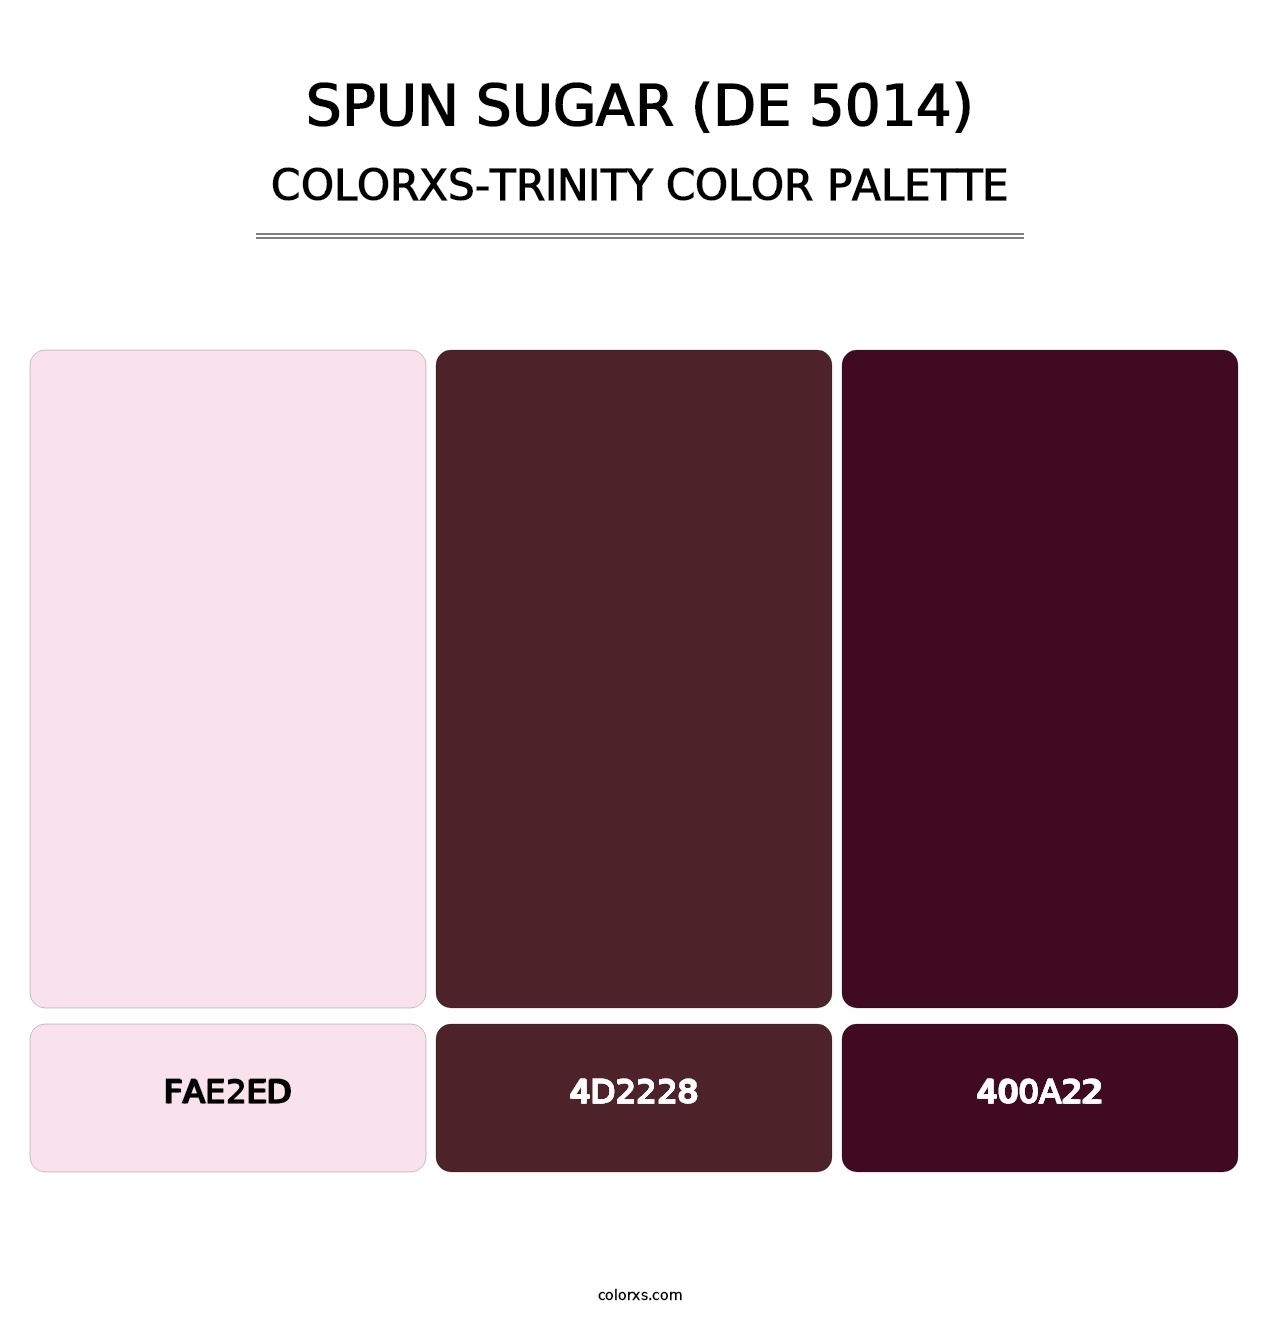 Spun Sugar (DE 5014) - Colorxs Trinity Palette